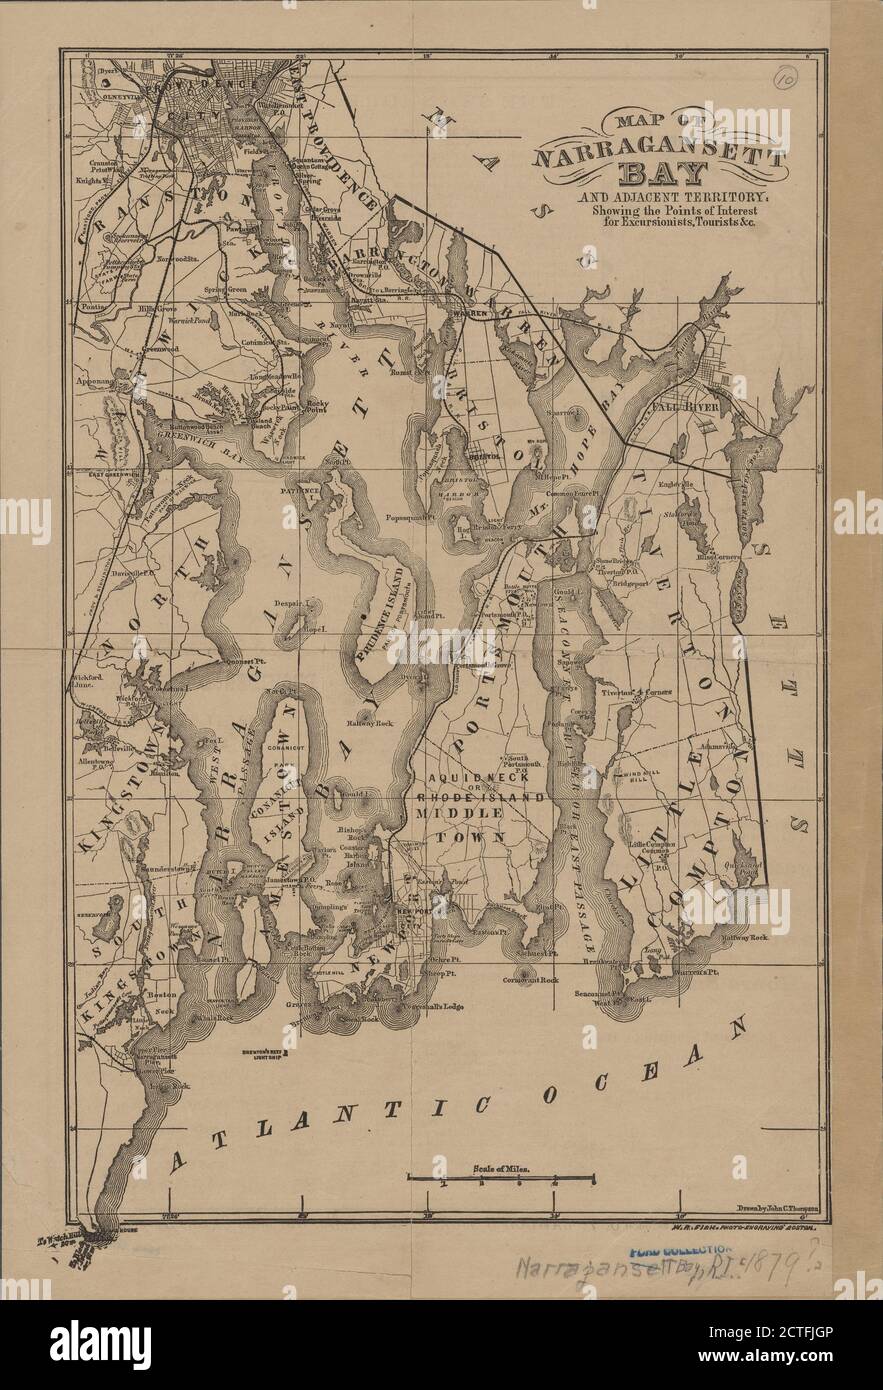 Carte de la baie de Narragansett et du territoire adjacent , cartographie, cartes, 1879, Fisk, W. R. Banque D'Images